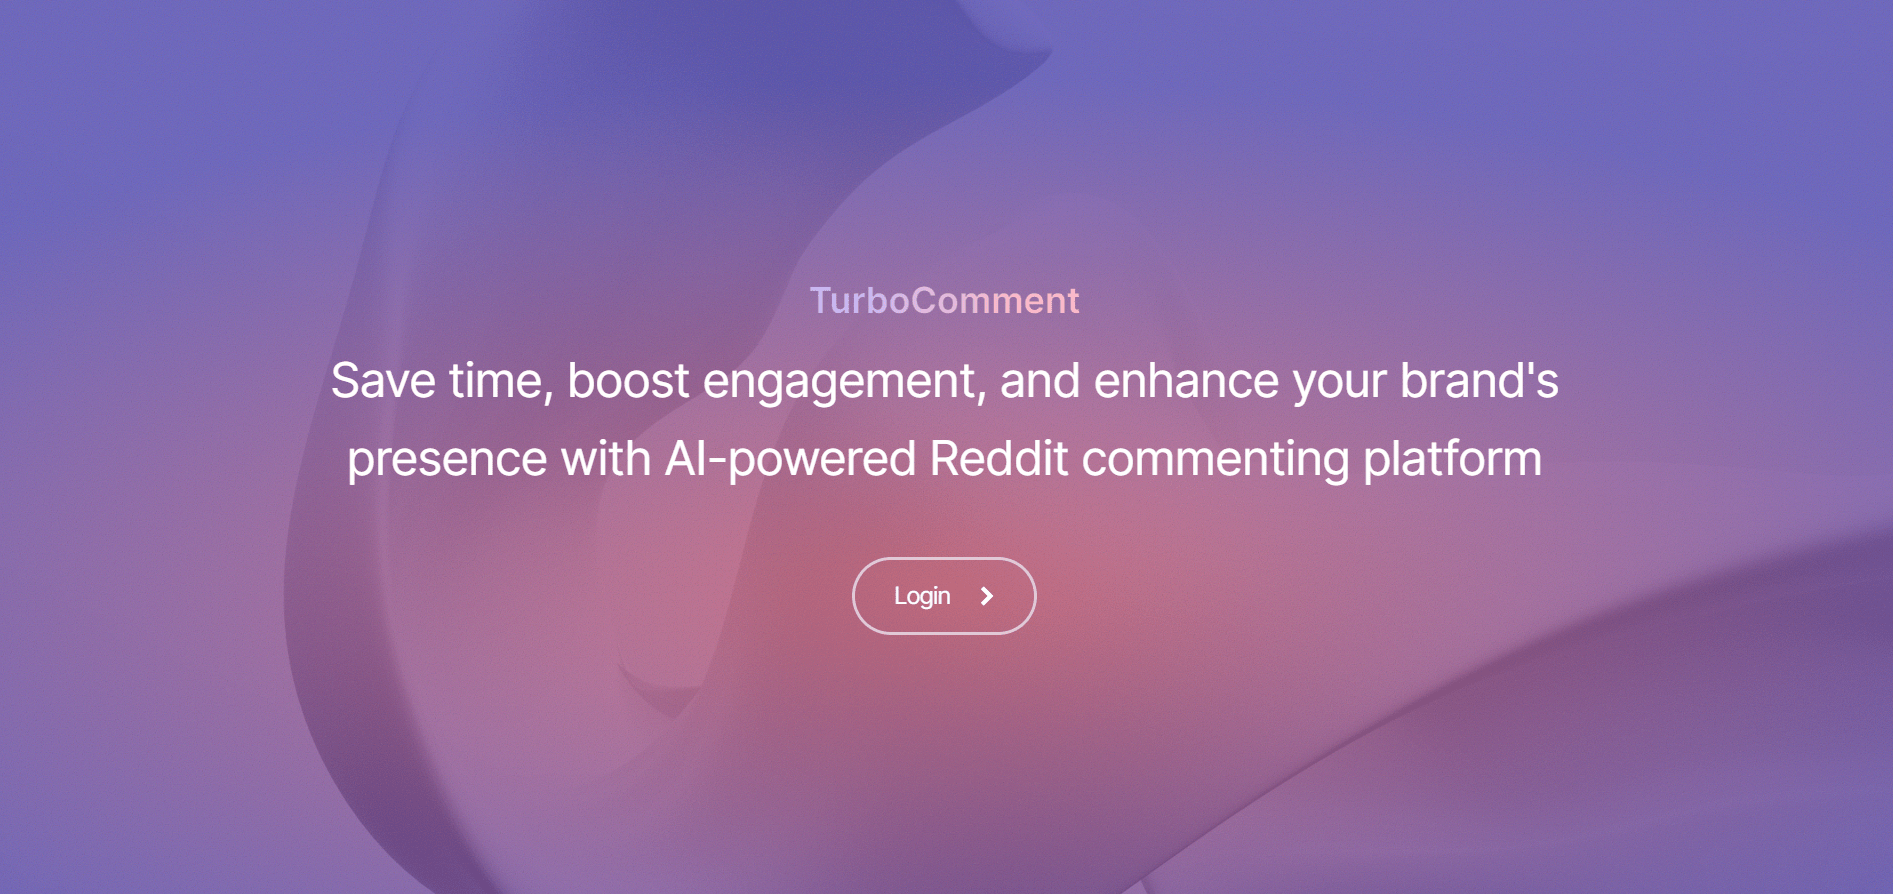 TurboComment